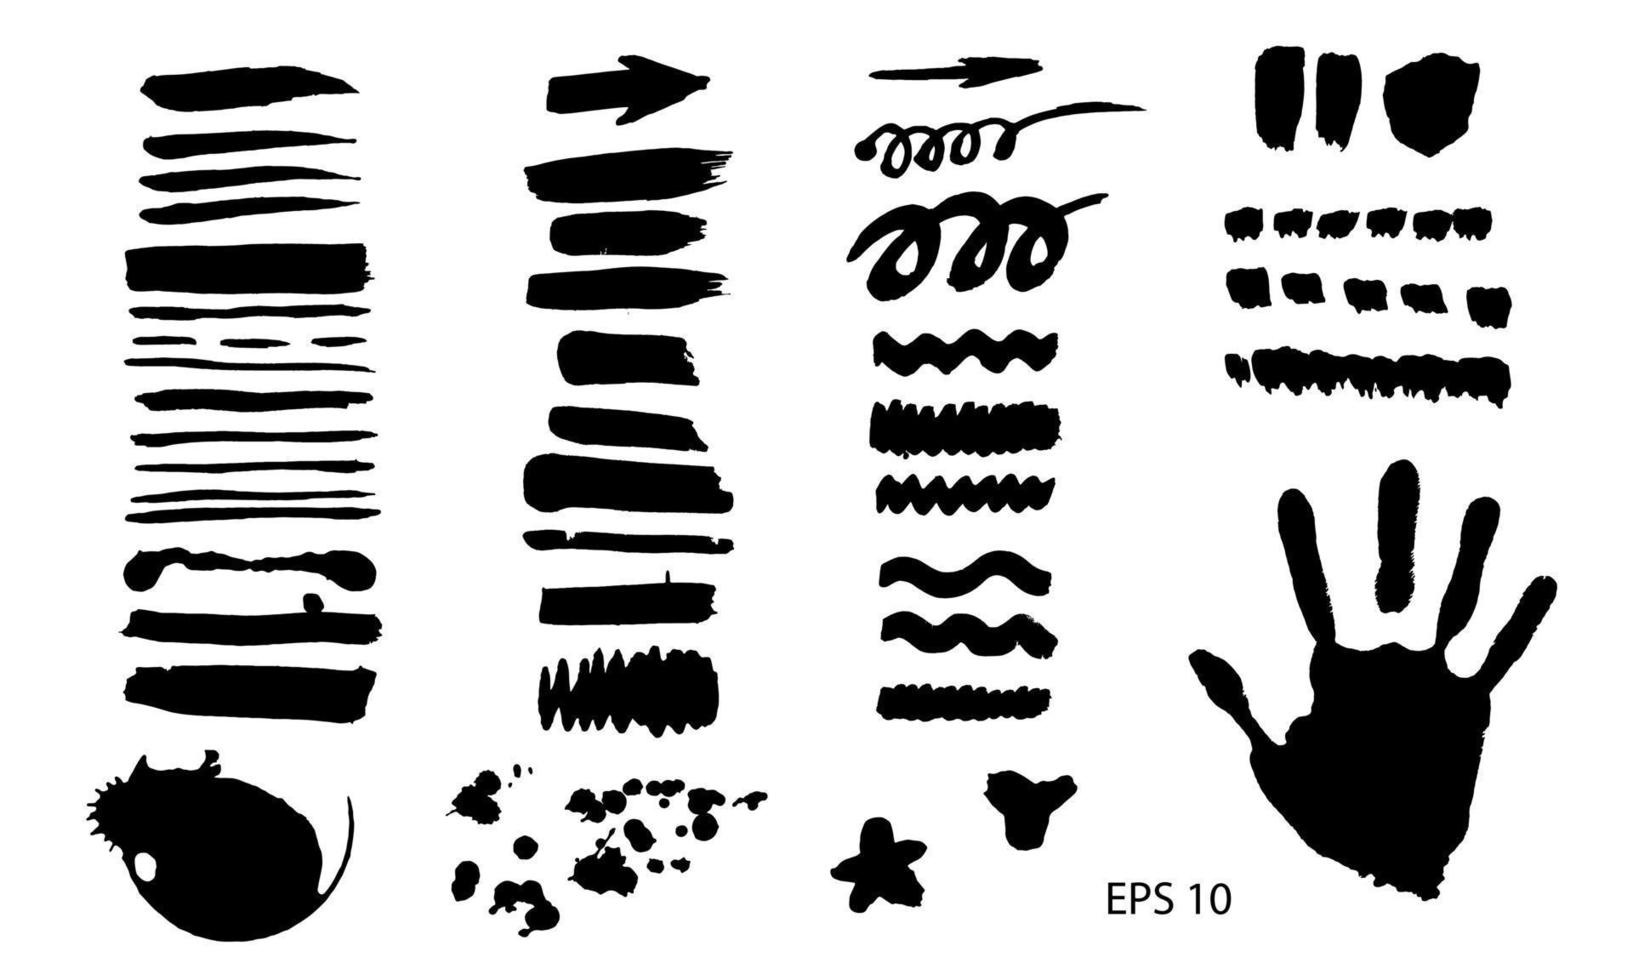 conjunto de vectores con trazos de pincel, ilustración dibujada a mano de textura. punto negro sobre el fondo blanco.